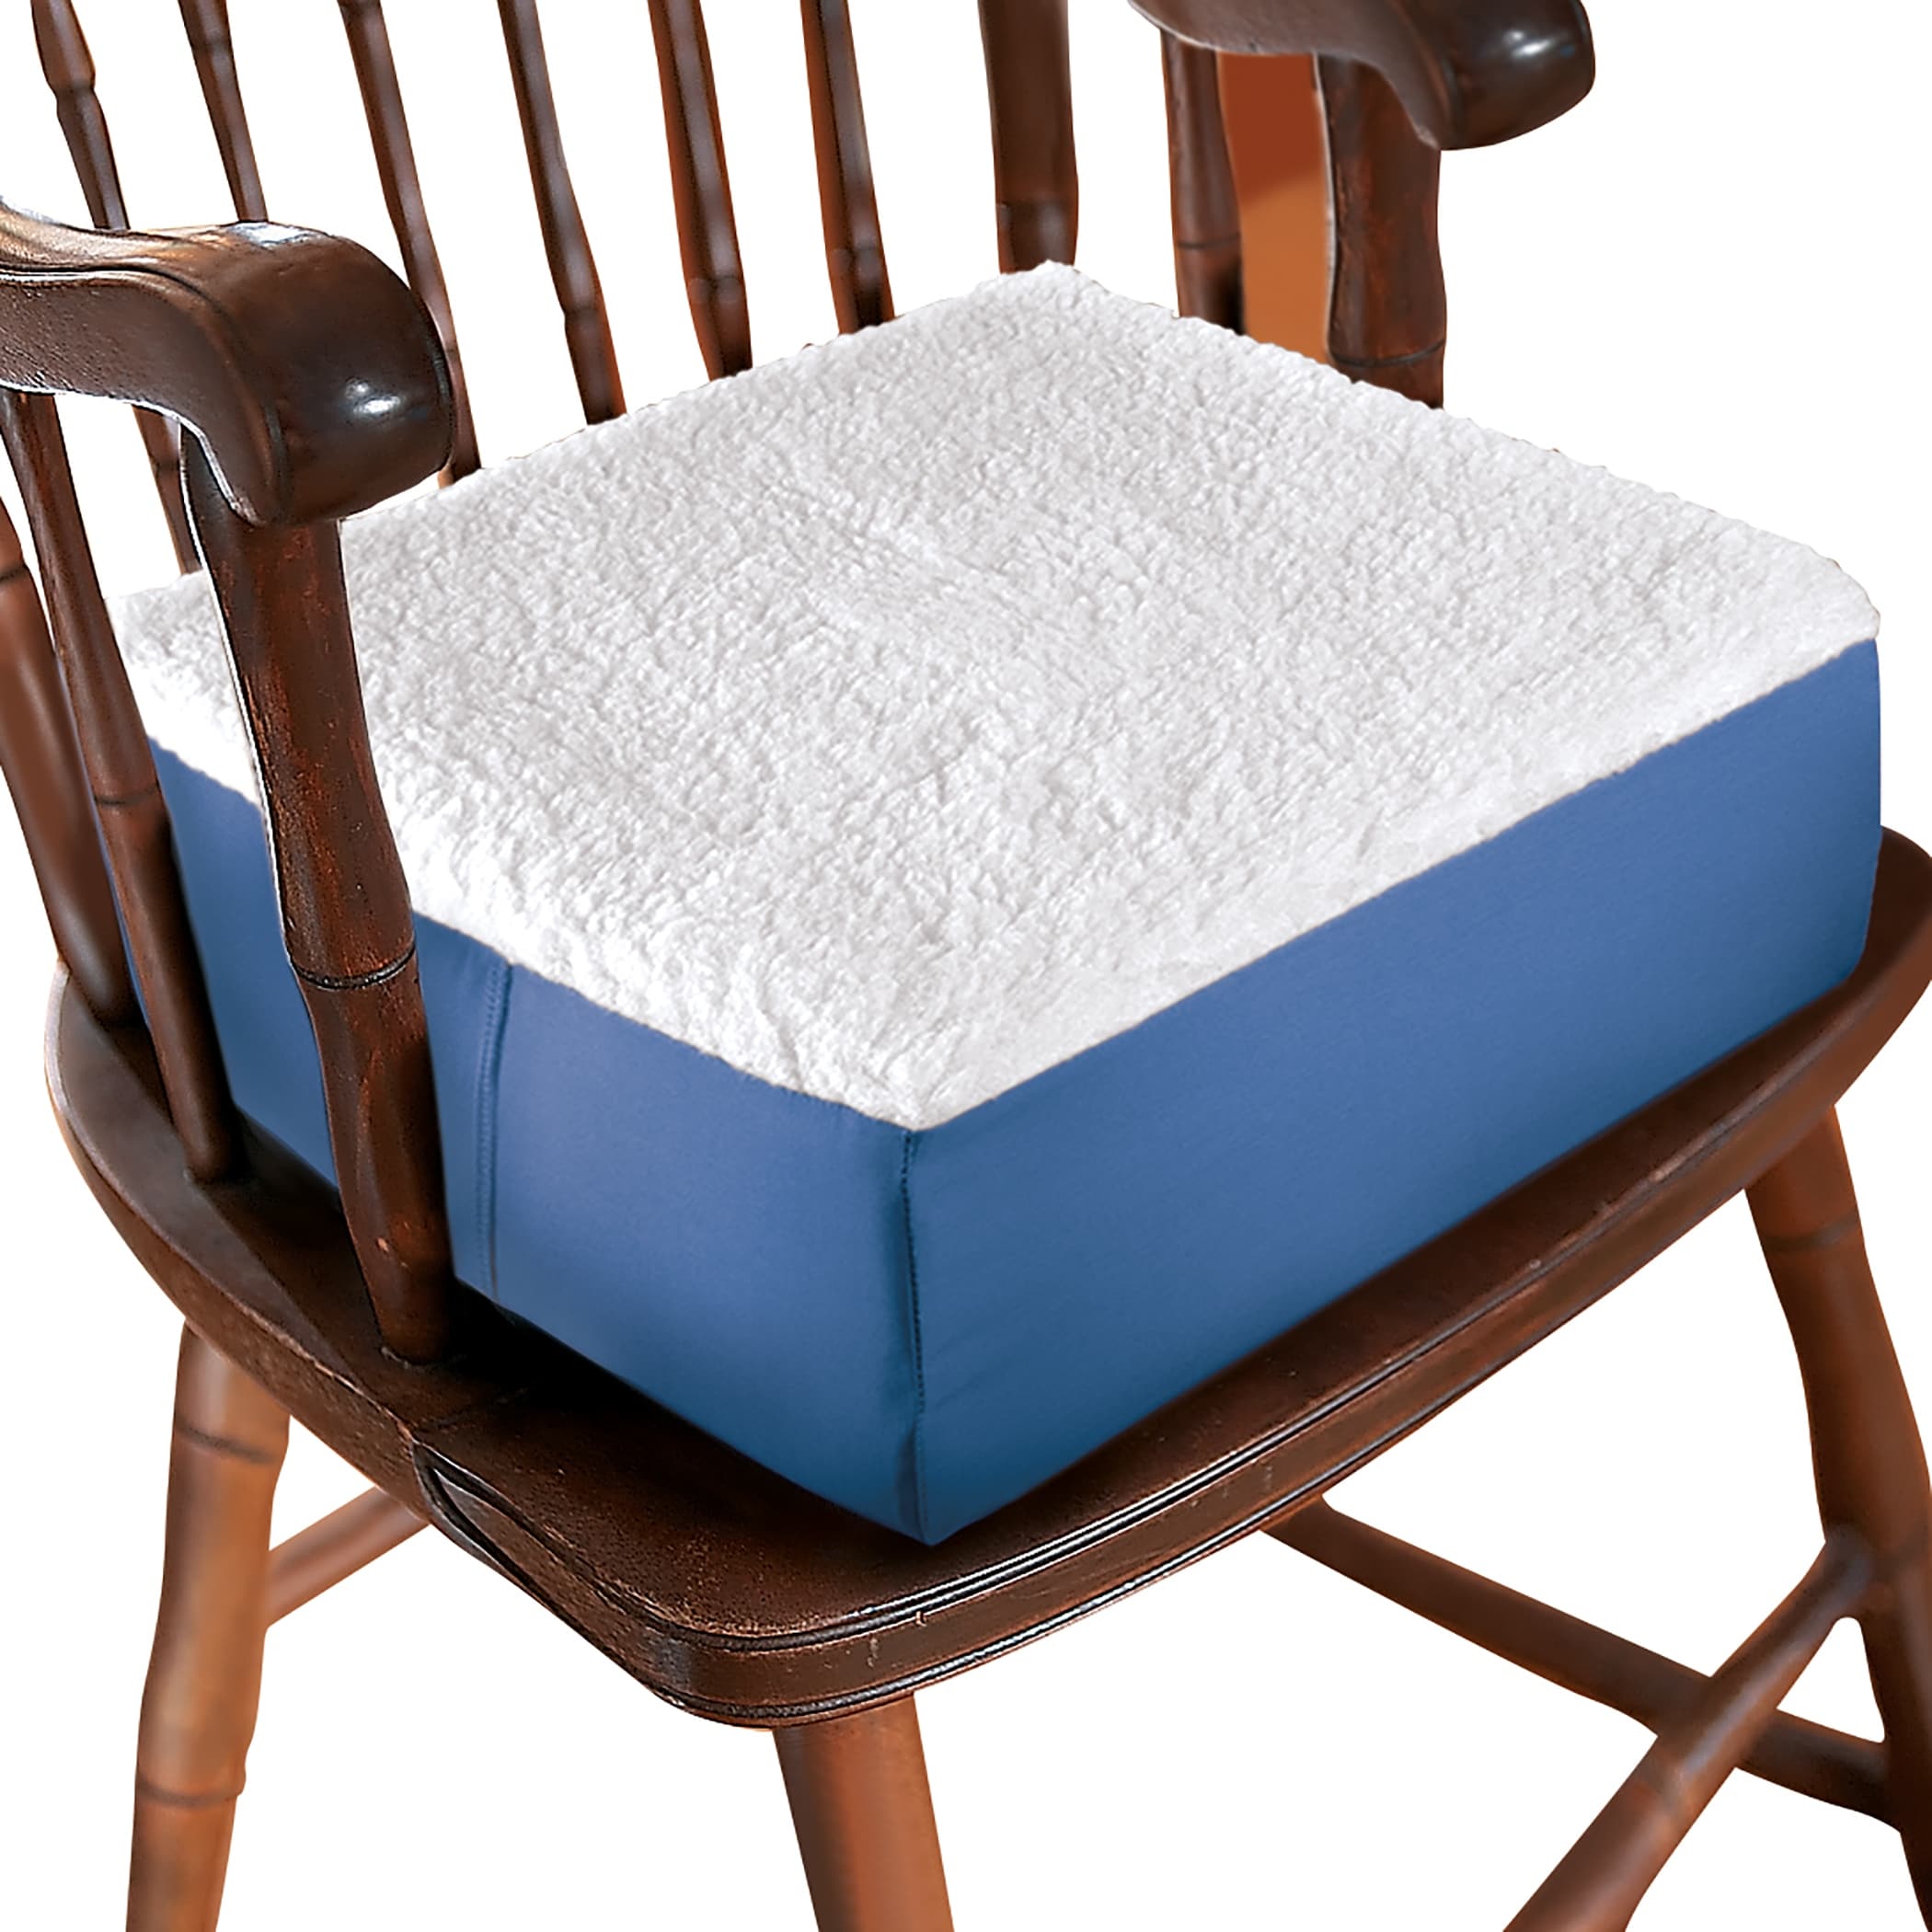 Extra Thick Foam Chair Cushion - 14.000 x 14.000 x 5.000